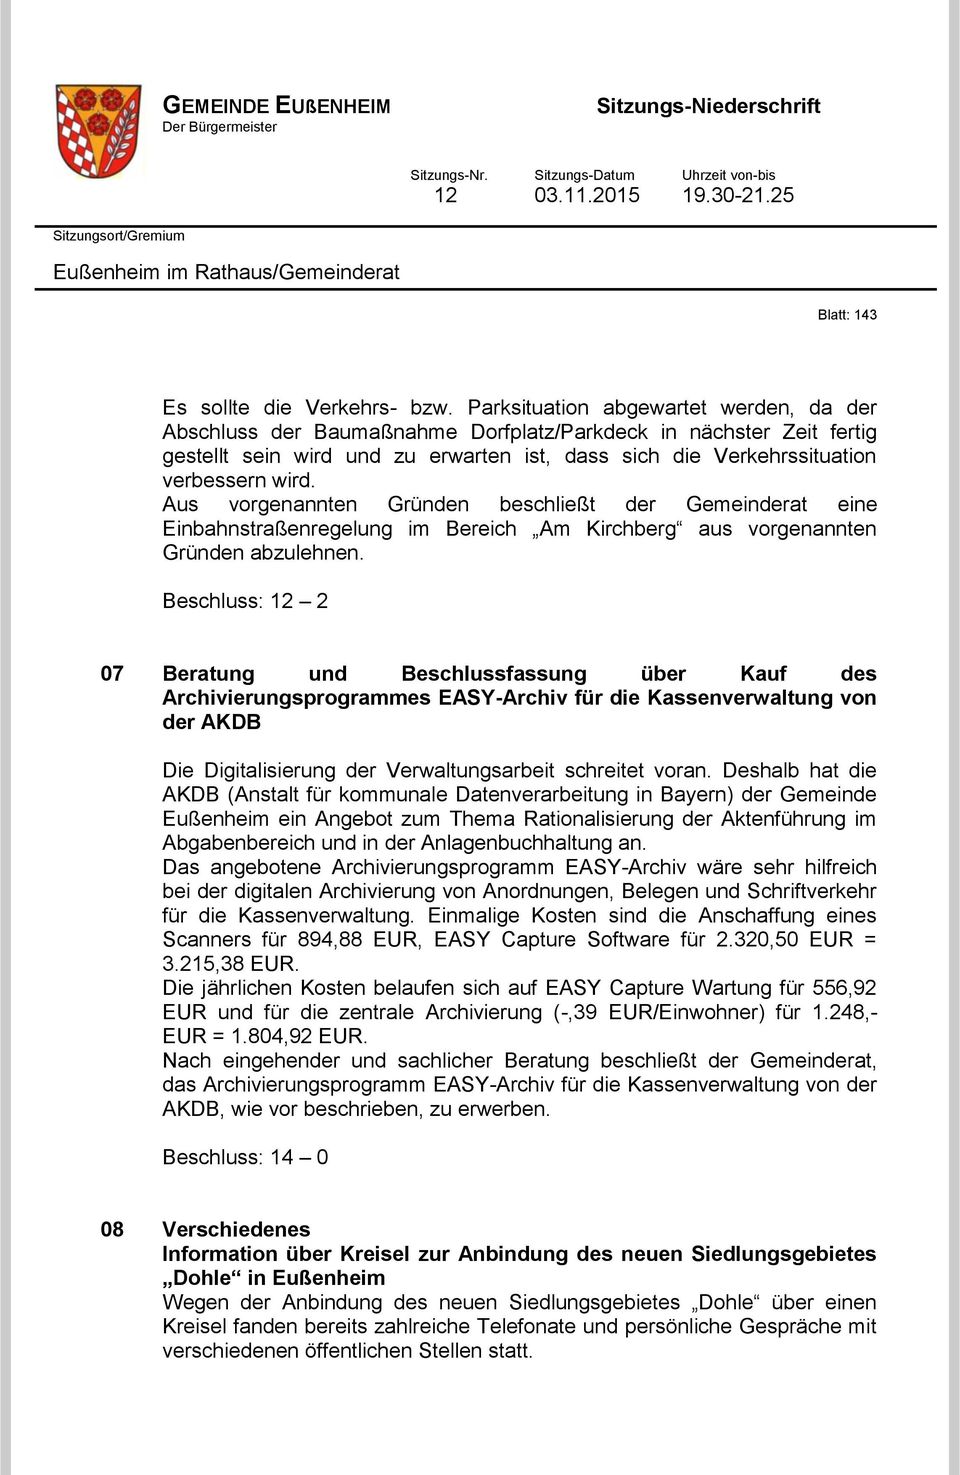 Aus vorgenannten Gründen beschließt der Gemeinderat eine Einbahnstraßenregelung im Bereich Am Kirchberg aus vorgenannten Gründen abzulehnen.